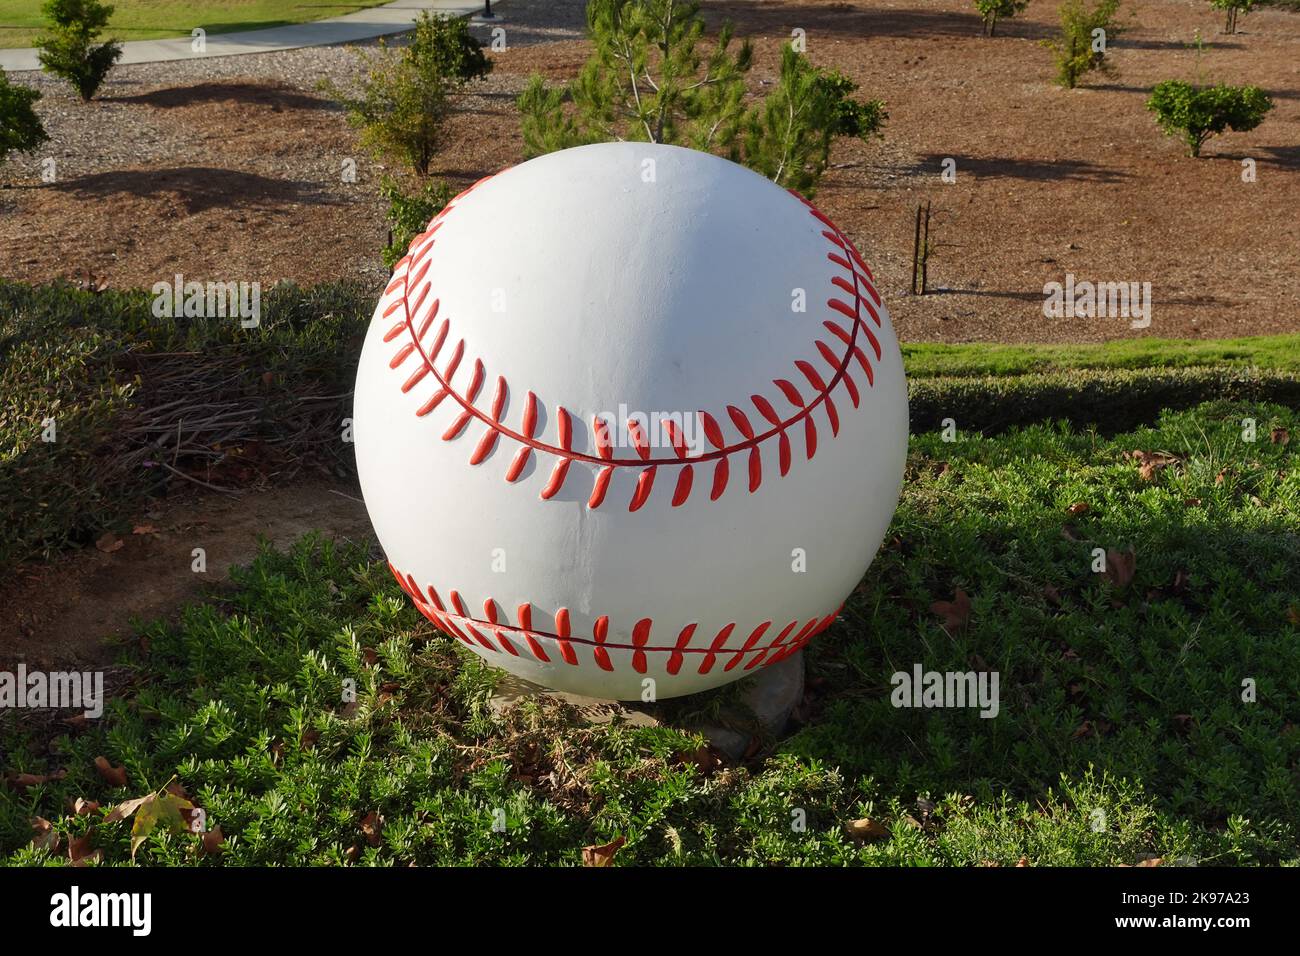 Un terrain de baseball en béton pour l'aménagement paysager d'un parc sportif public. Banque D'Images